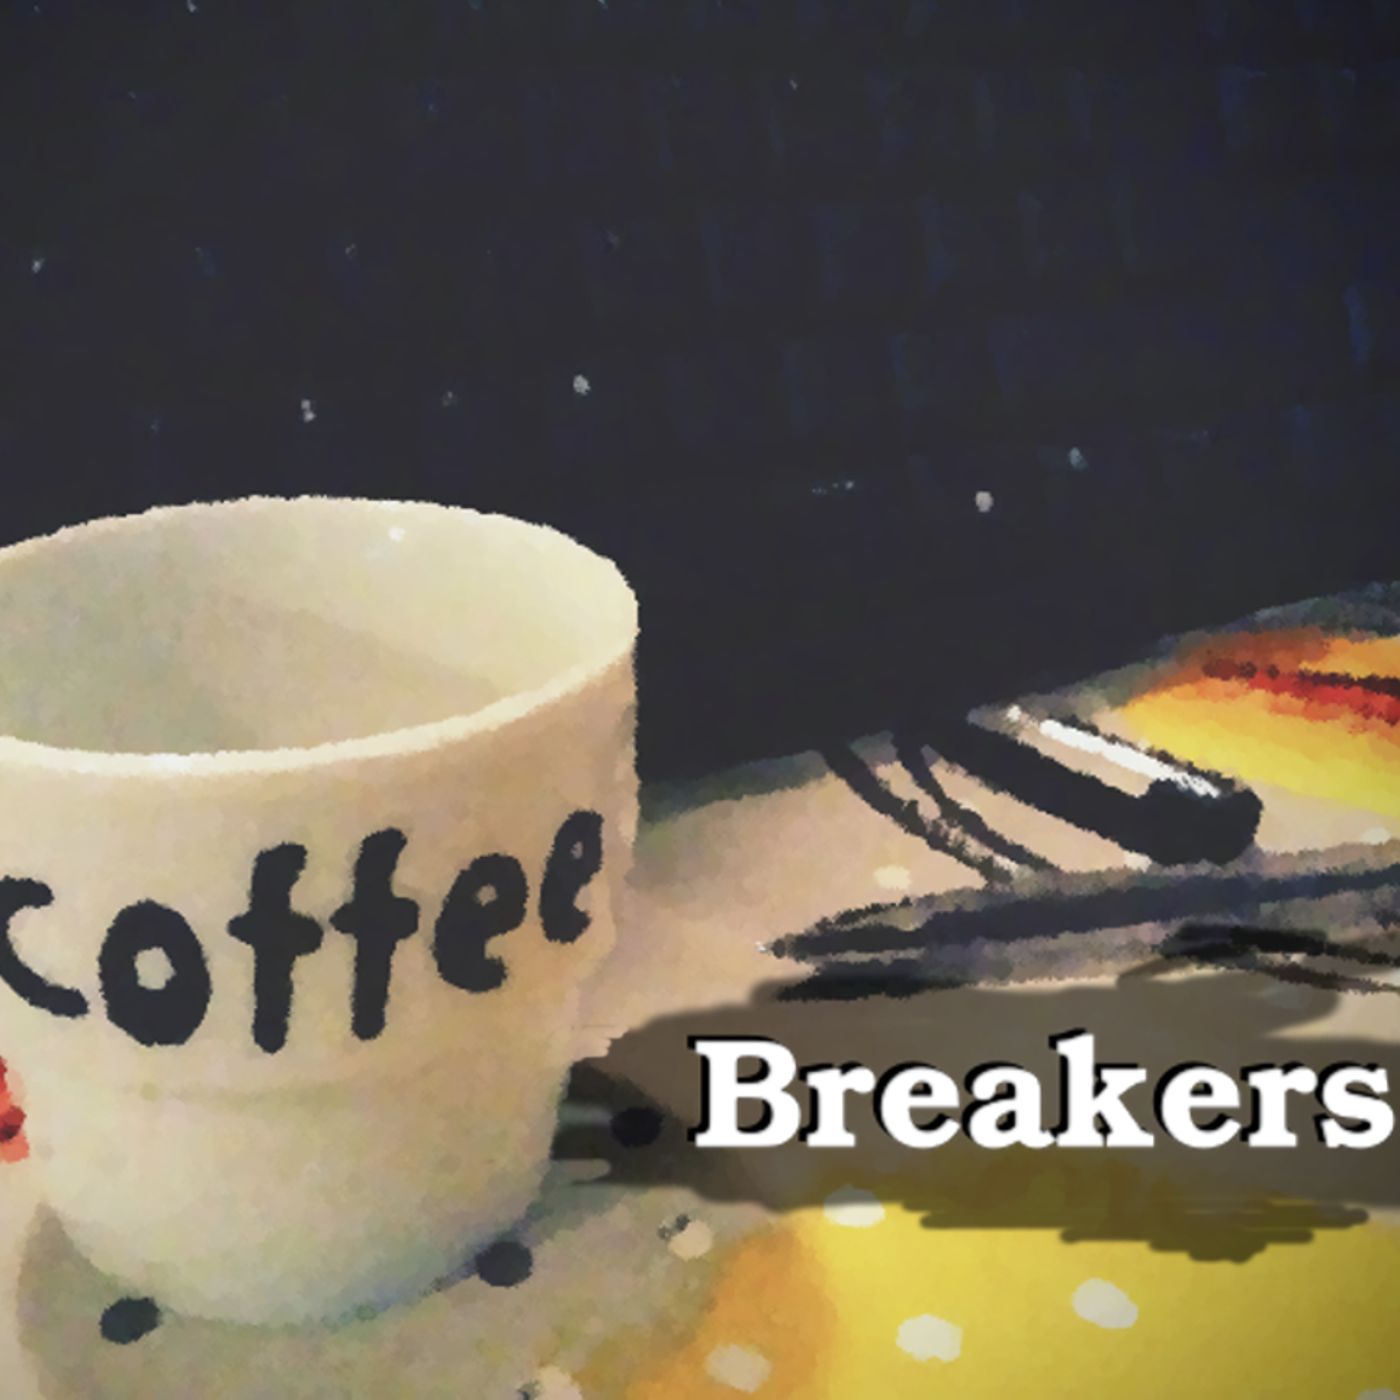 Coffee Breakers